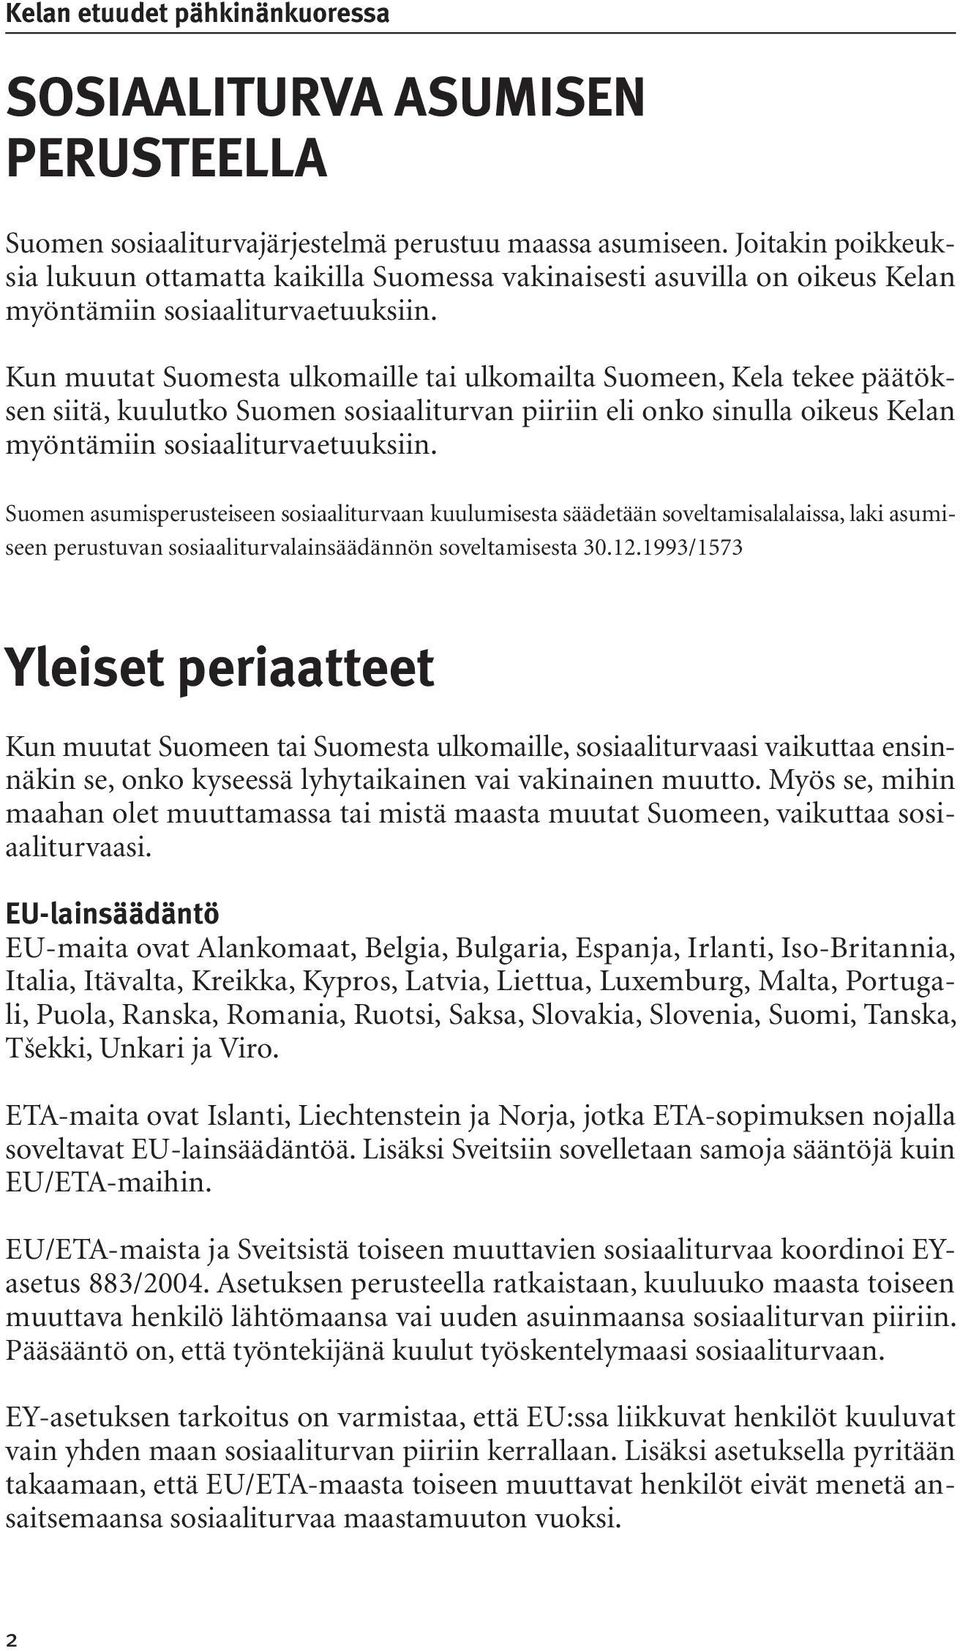 Kun muutat Suomesta ulkomaille tai ulkomailta Suomeen, Kela tekee päätöksen siitä, kuulutko Suomen sosiaaliturvan piiriin eli onko sinulla oikeus Kelan myöntämiin sosiaaliturvaetuuksiin.